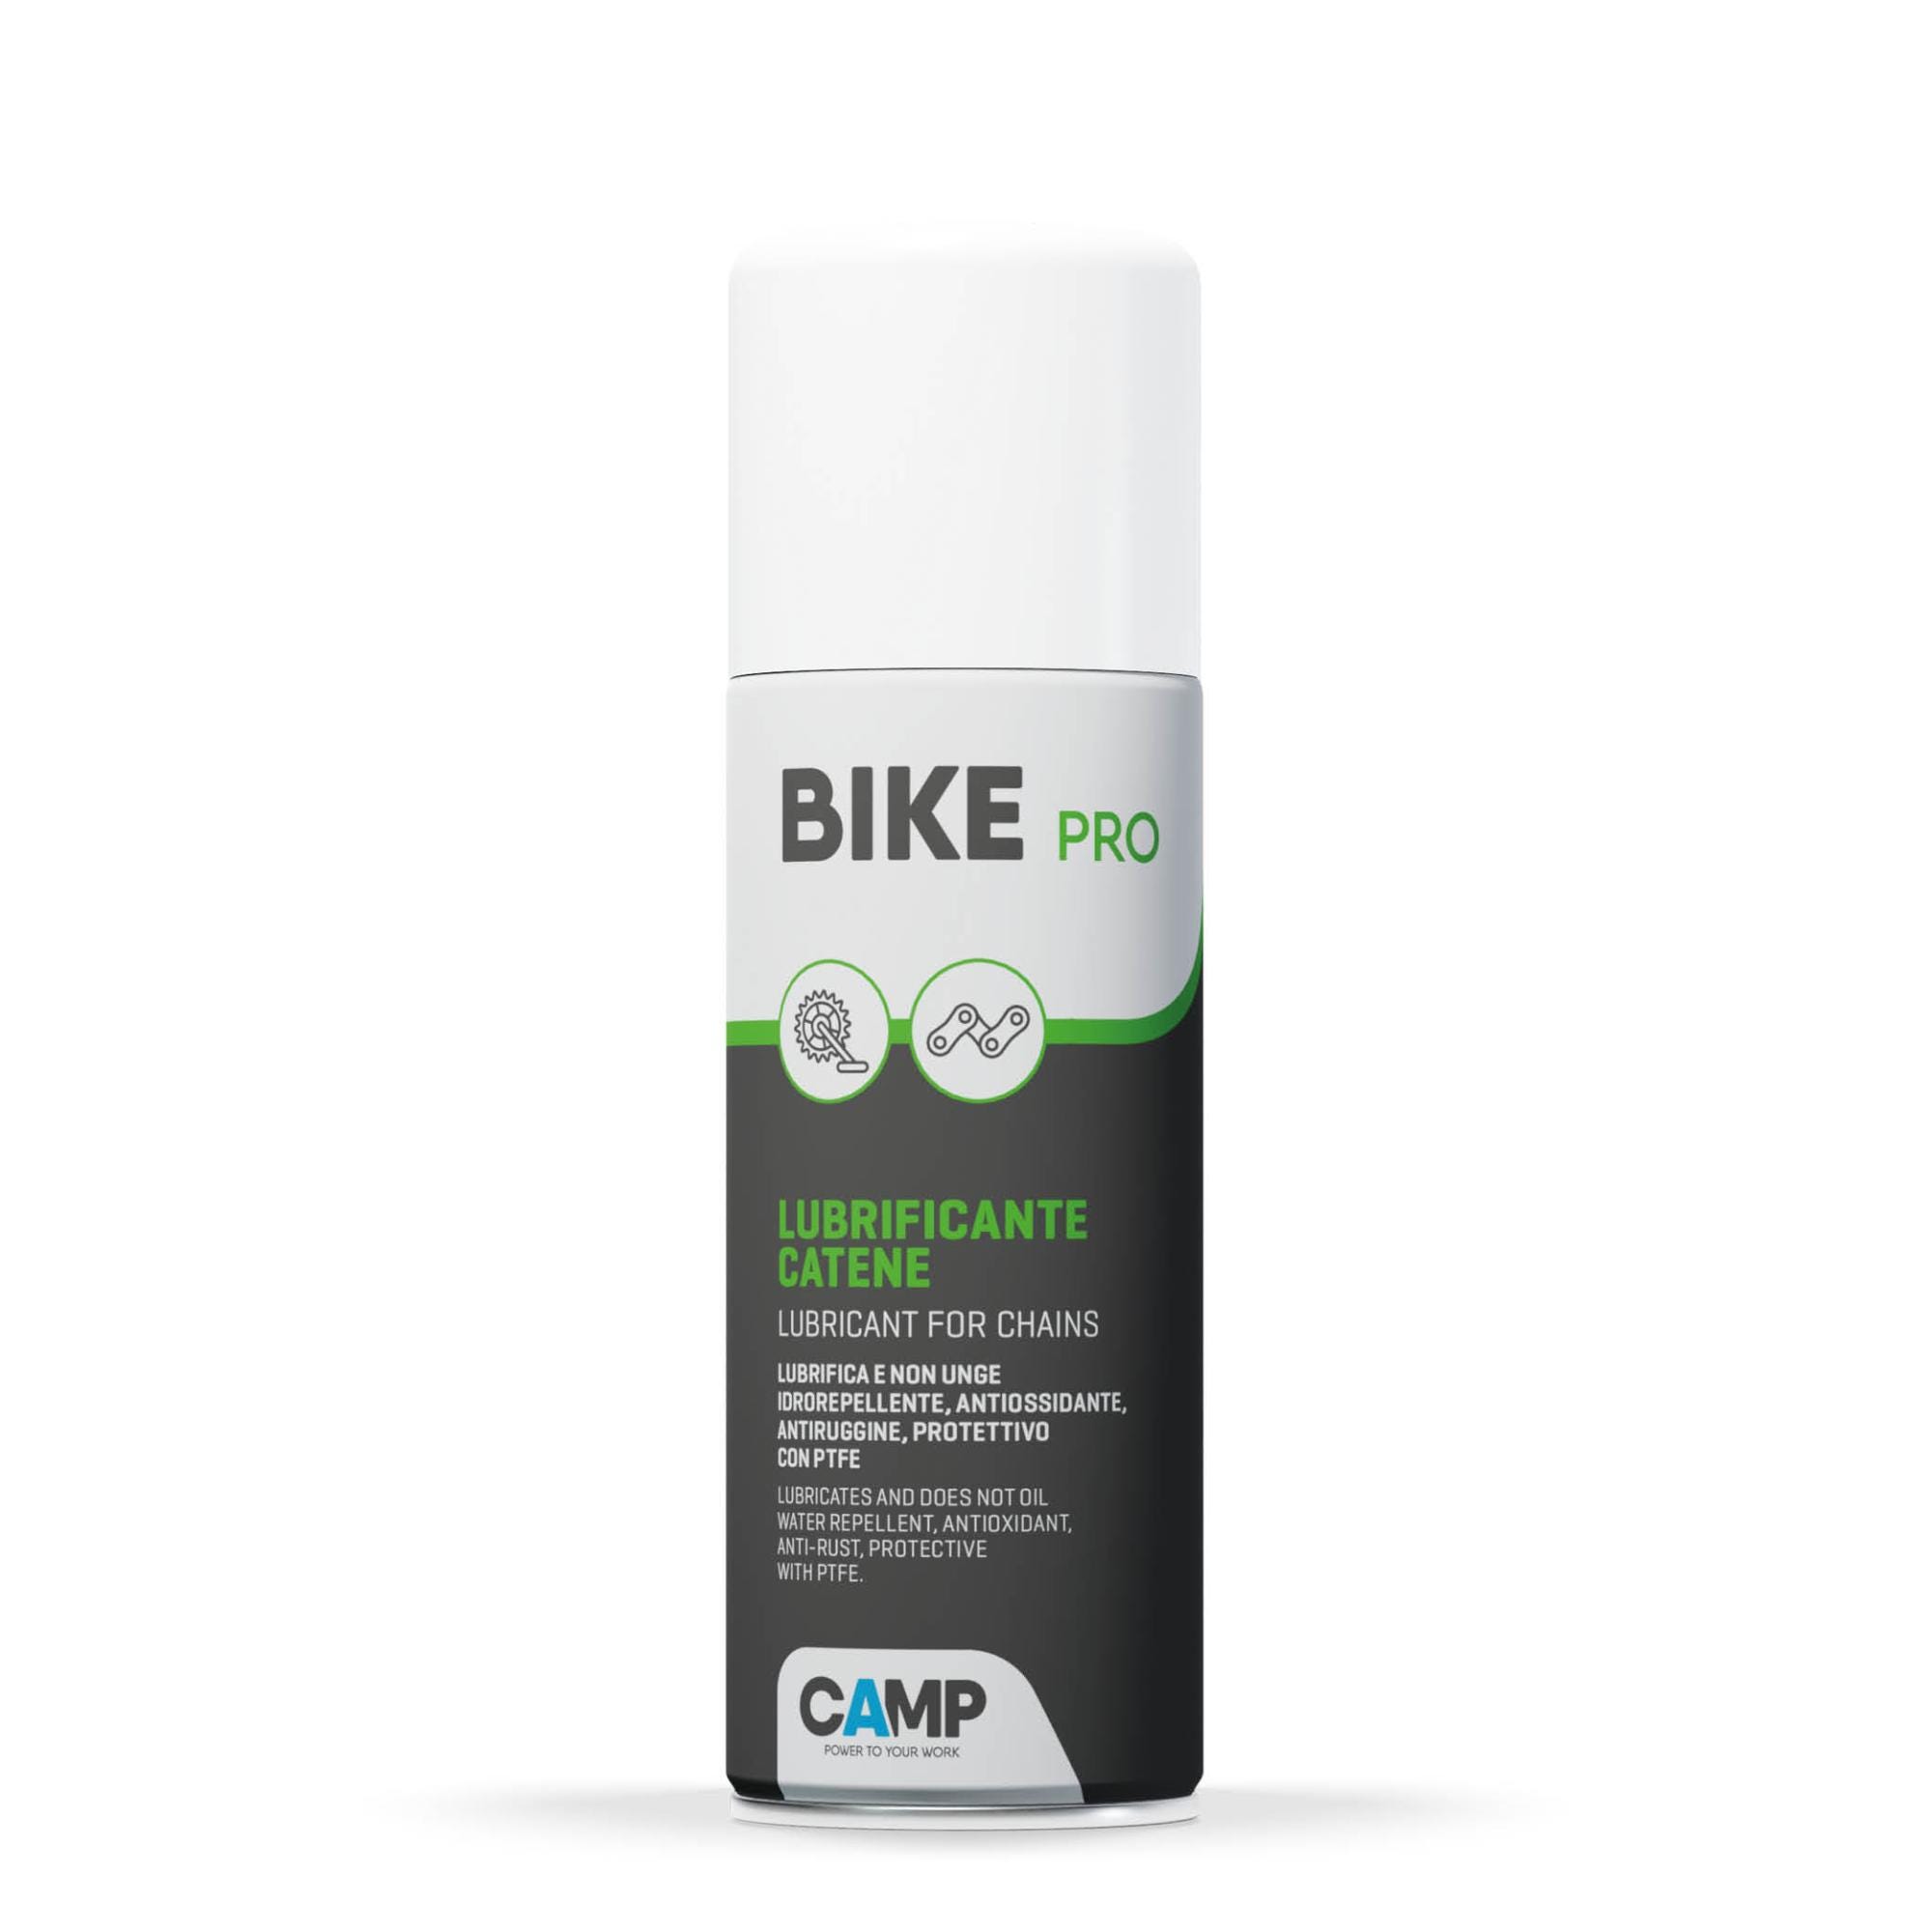 Camp BIKE PRO, Lubrificante catena bici, formula con PTFE